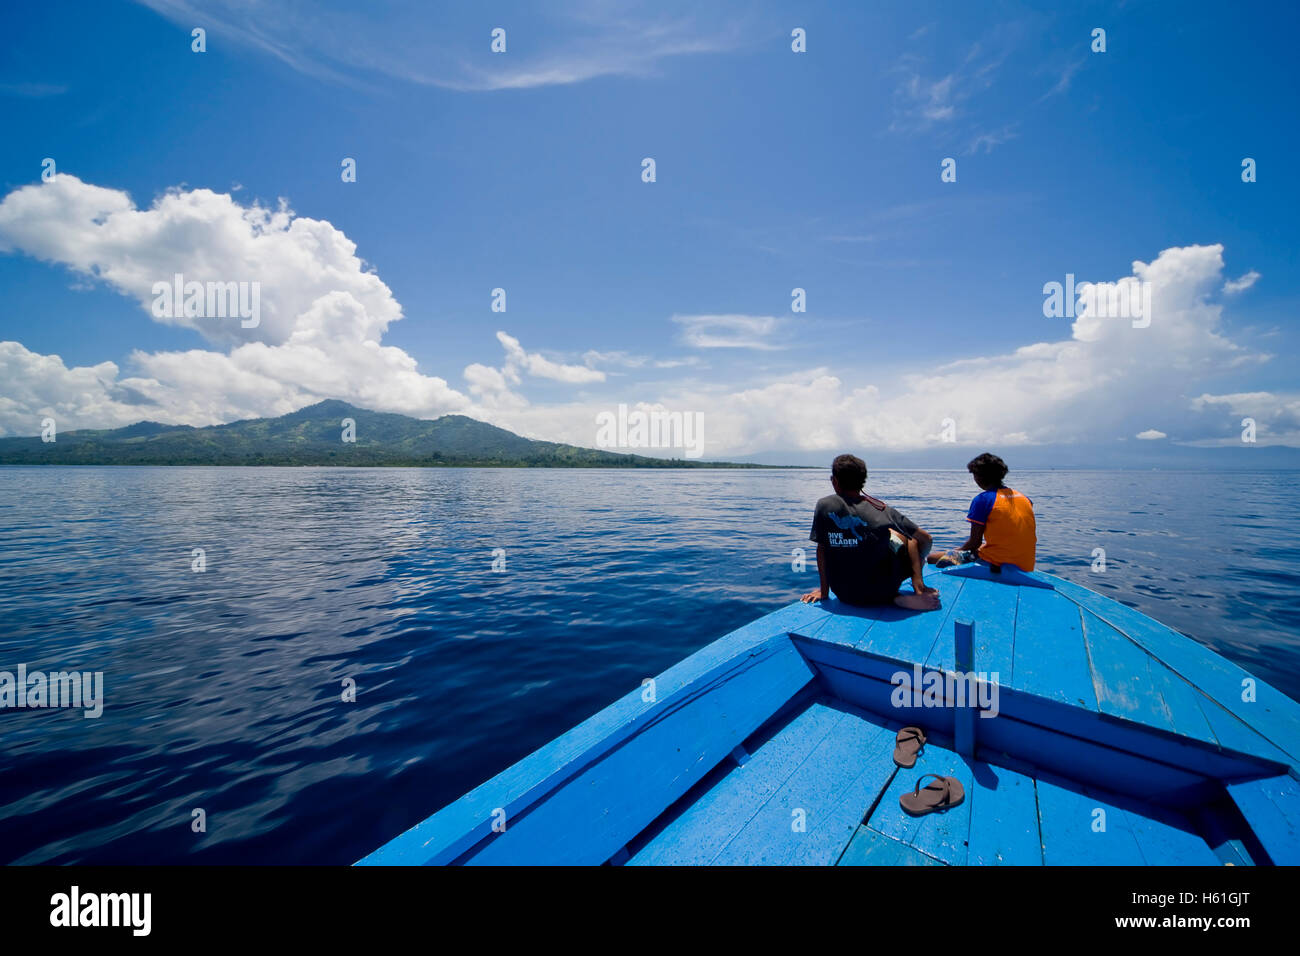 Pareja joven sentado en la proa de una embarcación de madera, el Siladen island, Sulawesi, Indonesia, el sudeste de Asia Foto de stock